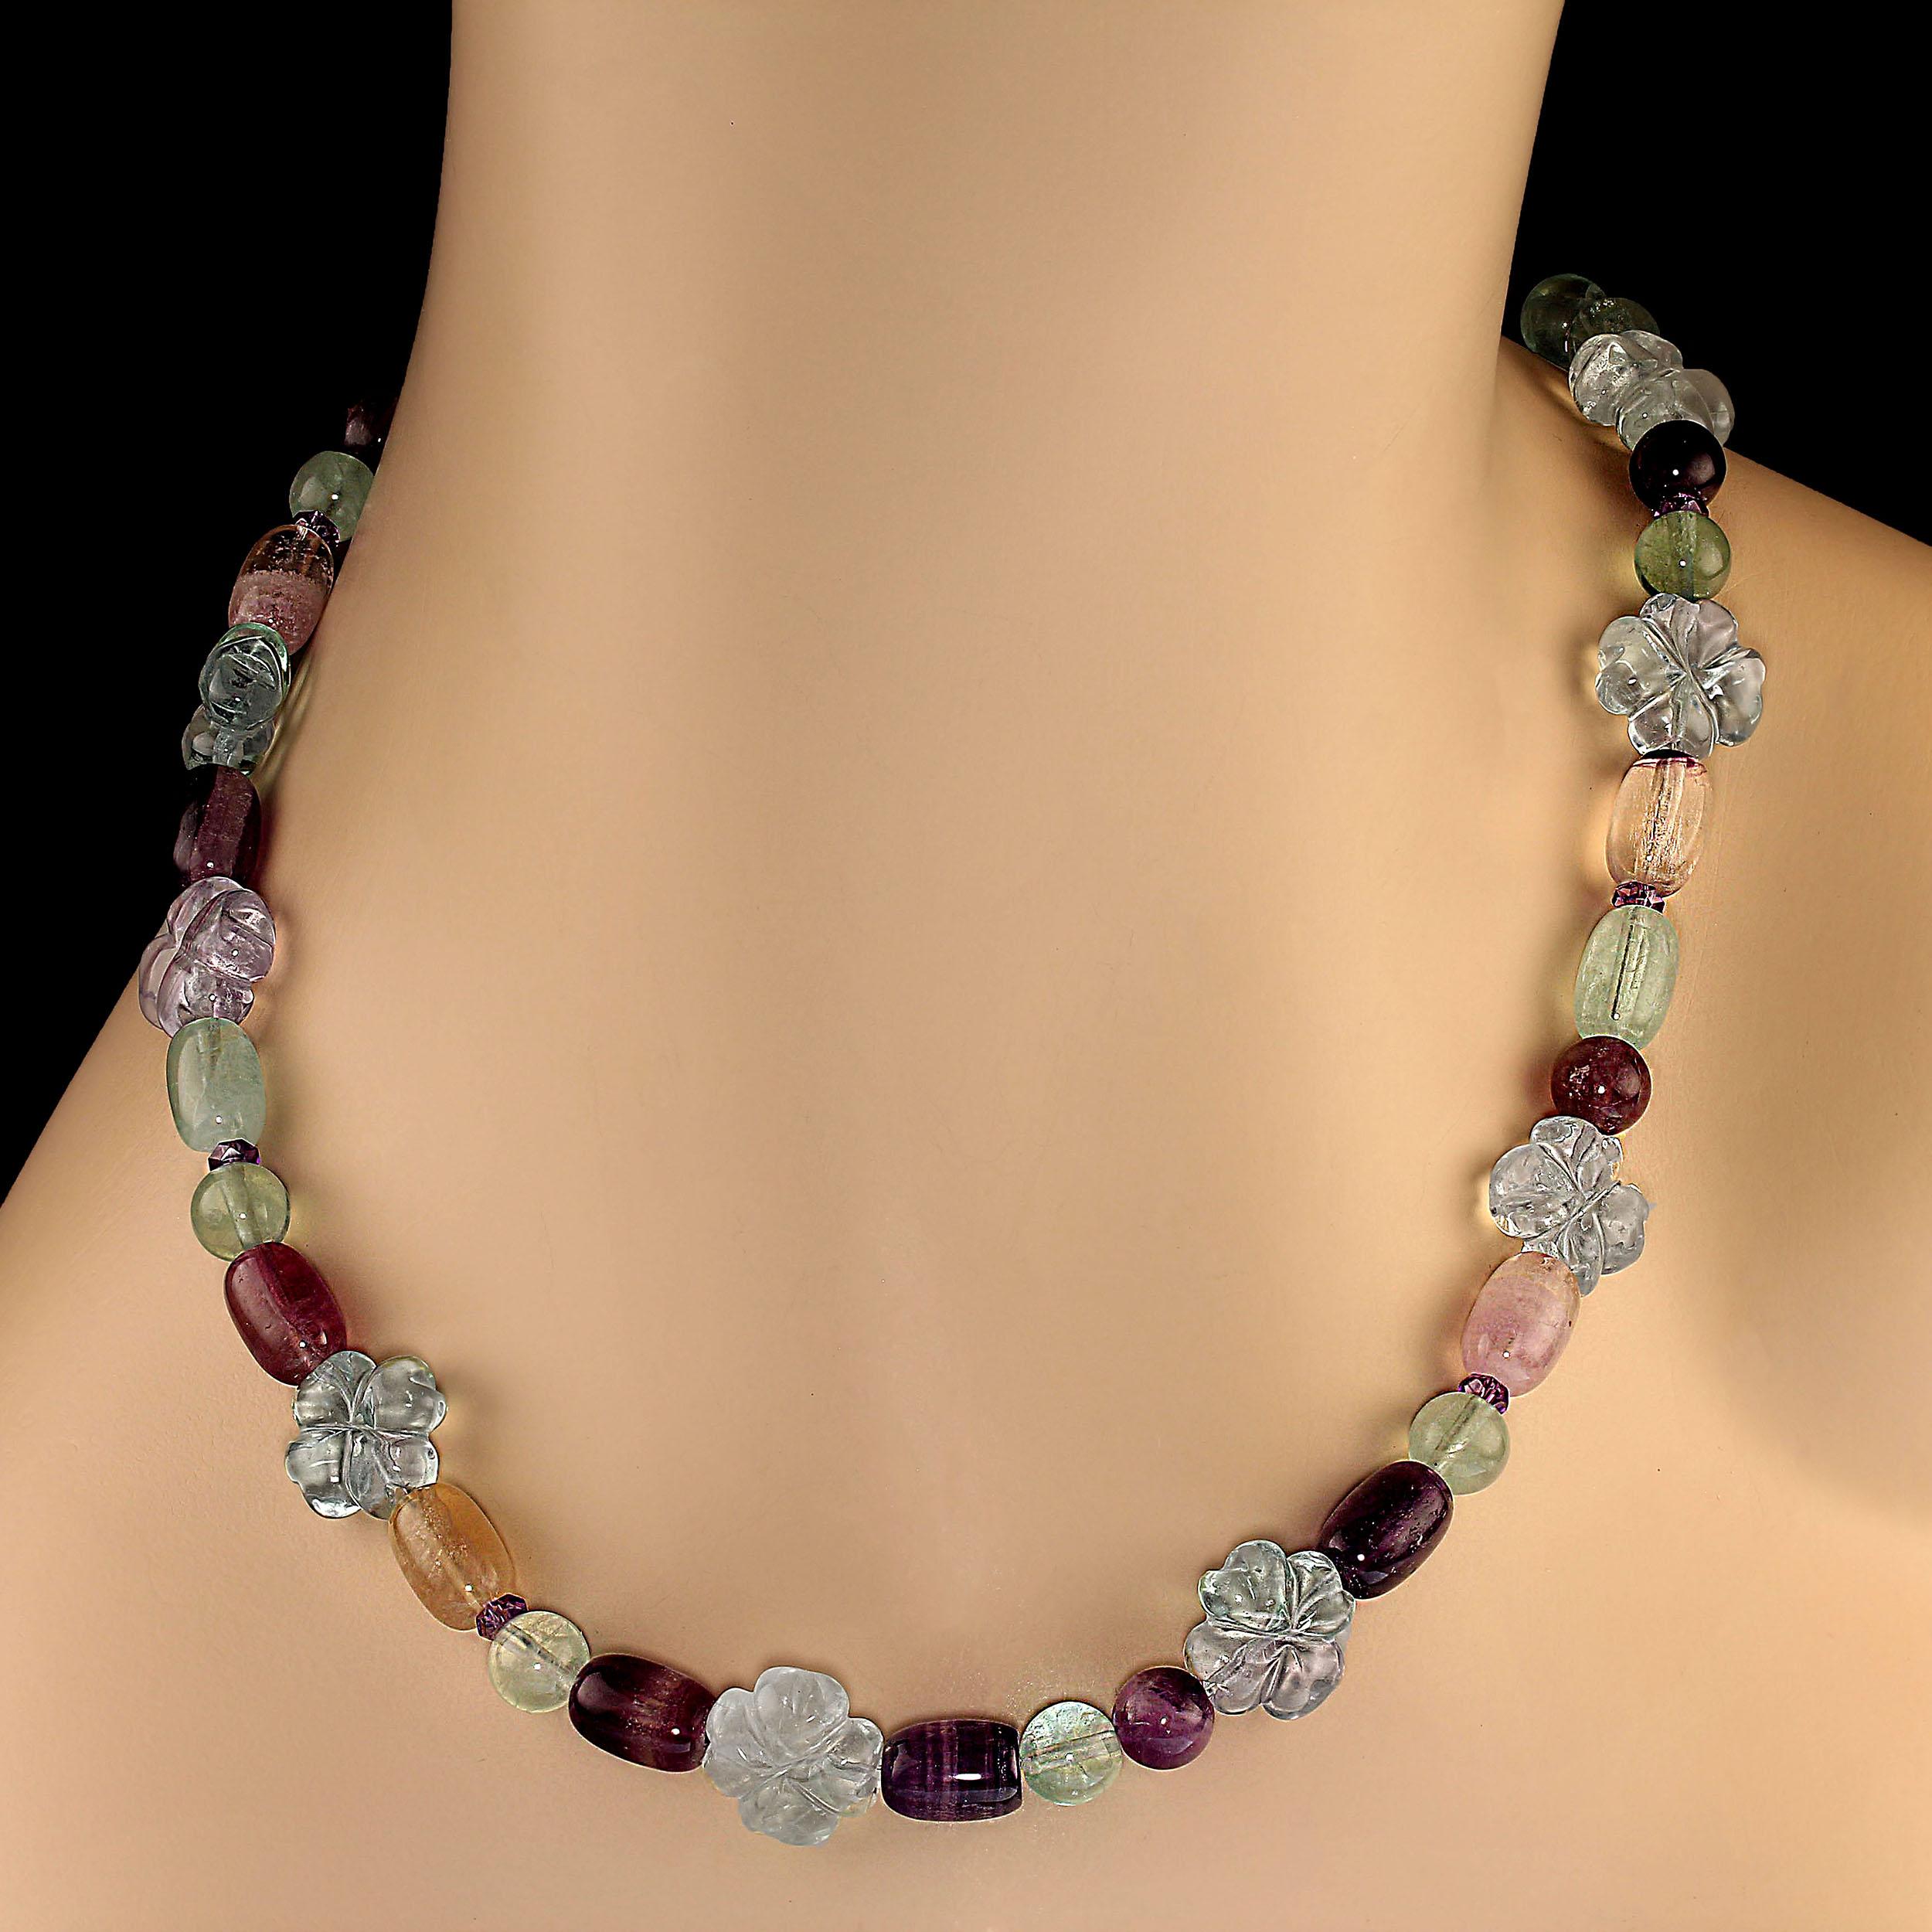 25-Zoll fabelhafte Fluorit-Halskette großartig für den Frühling.  Diese Halskette besteht aus grünem, violettem, goldenem, rosafarbenem und lilafarbenem Fluorit in verschiedenen Formen, darunter Blumen, Tonnen und runde Formen.  Wir haben funkelnde